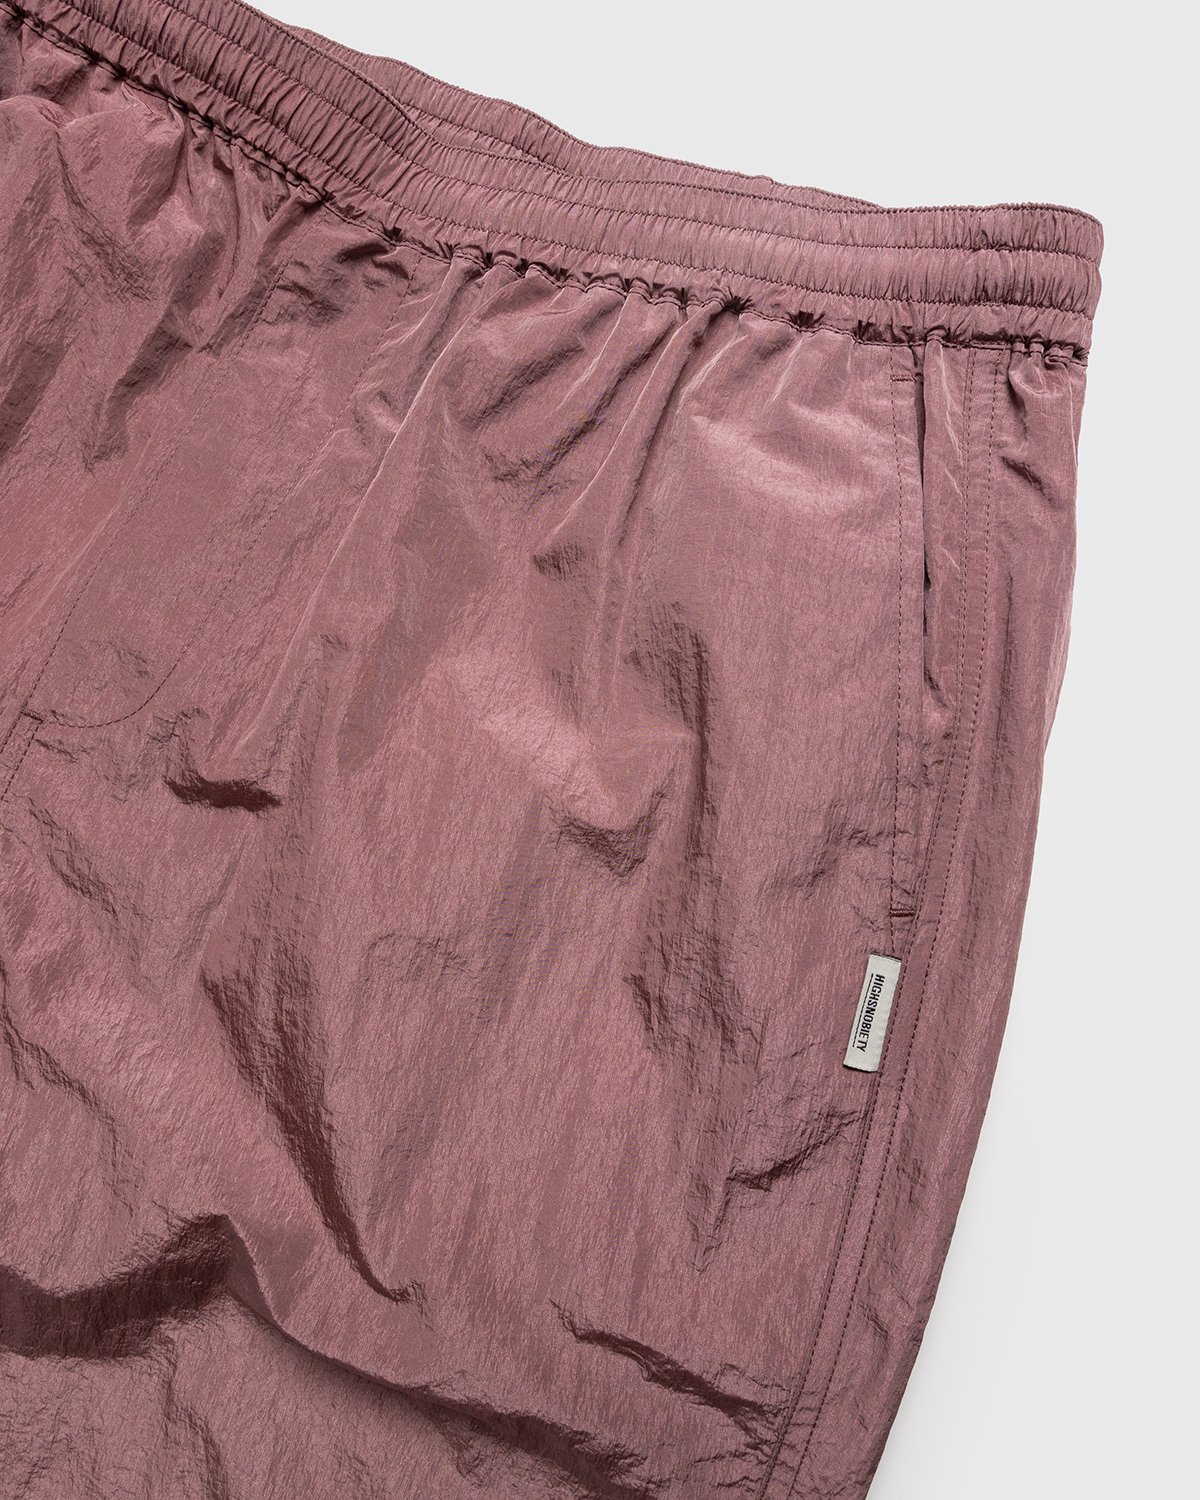 Highsnobiety - Crepe Nylon Elastic Pants Rose Gold - Clothing - Pink - Image 4